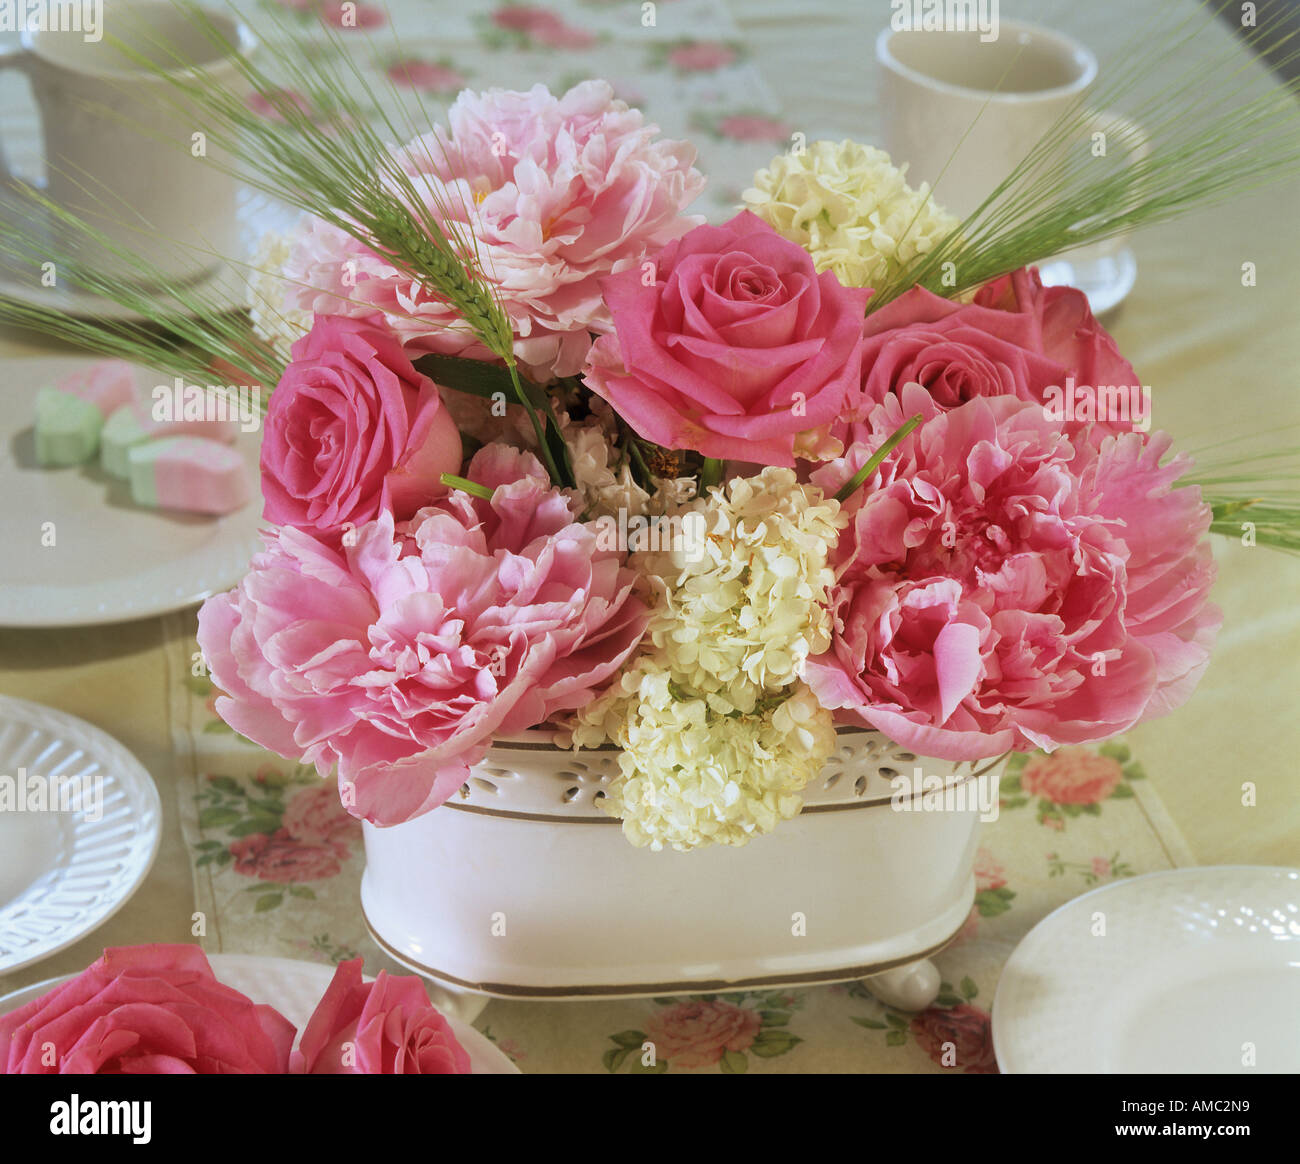 flower arrangement : roses, peonies and viburnum Stock Photo